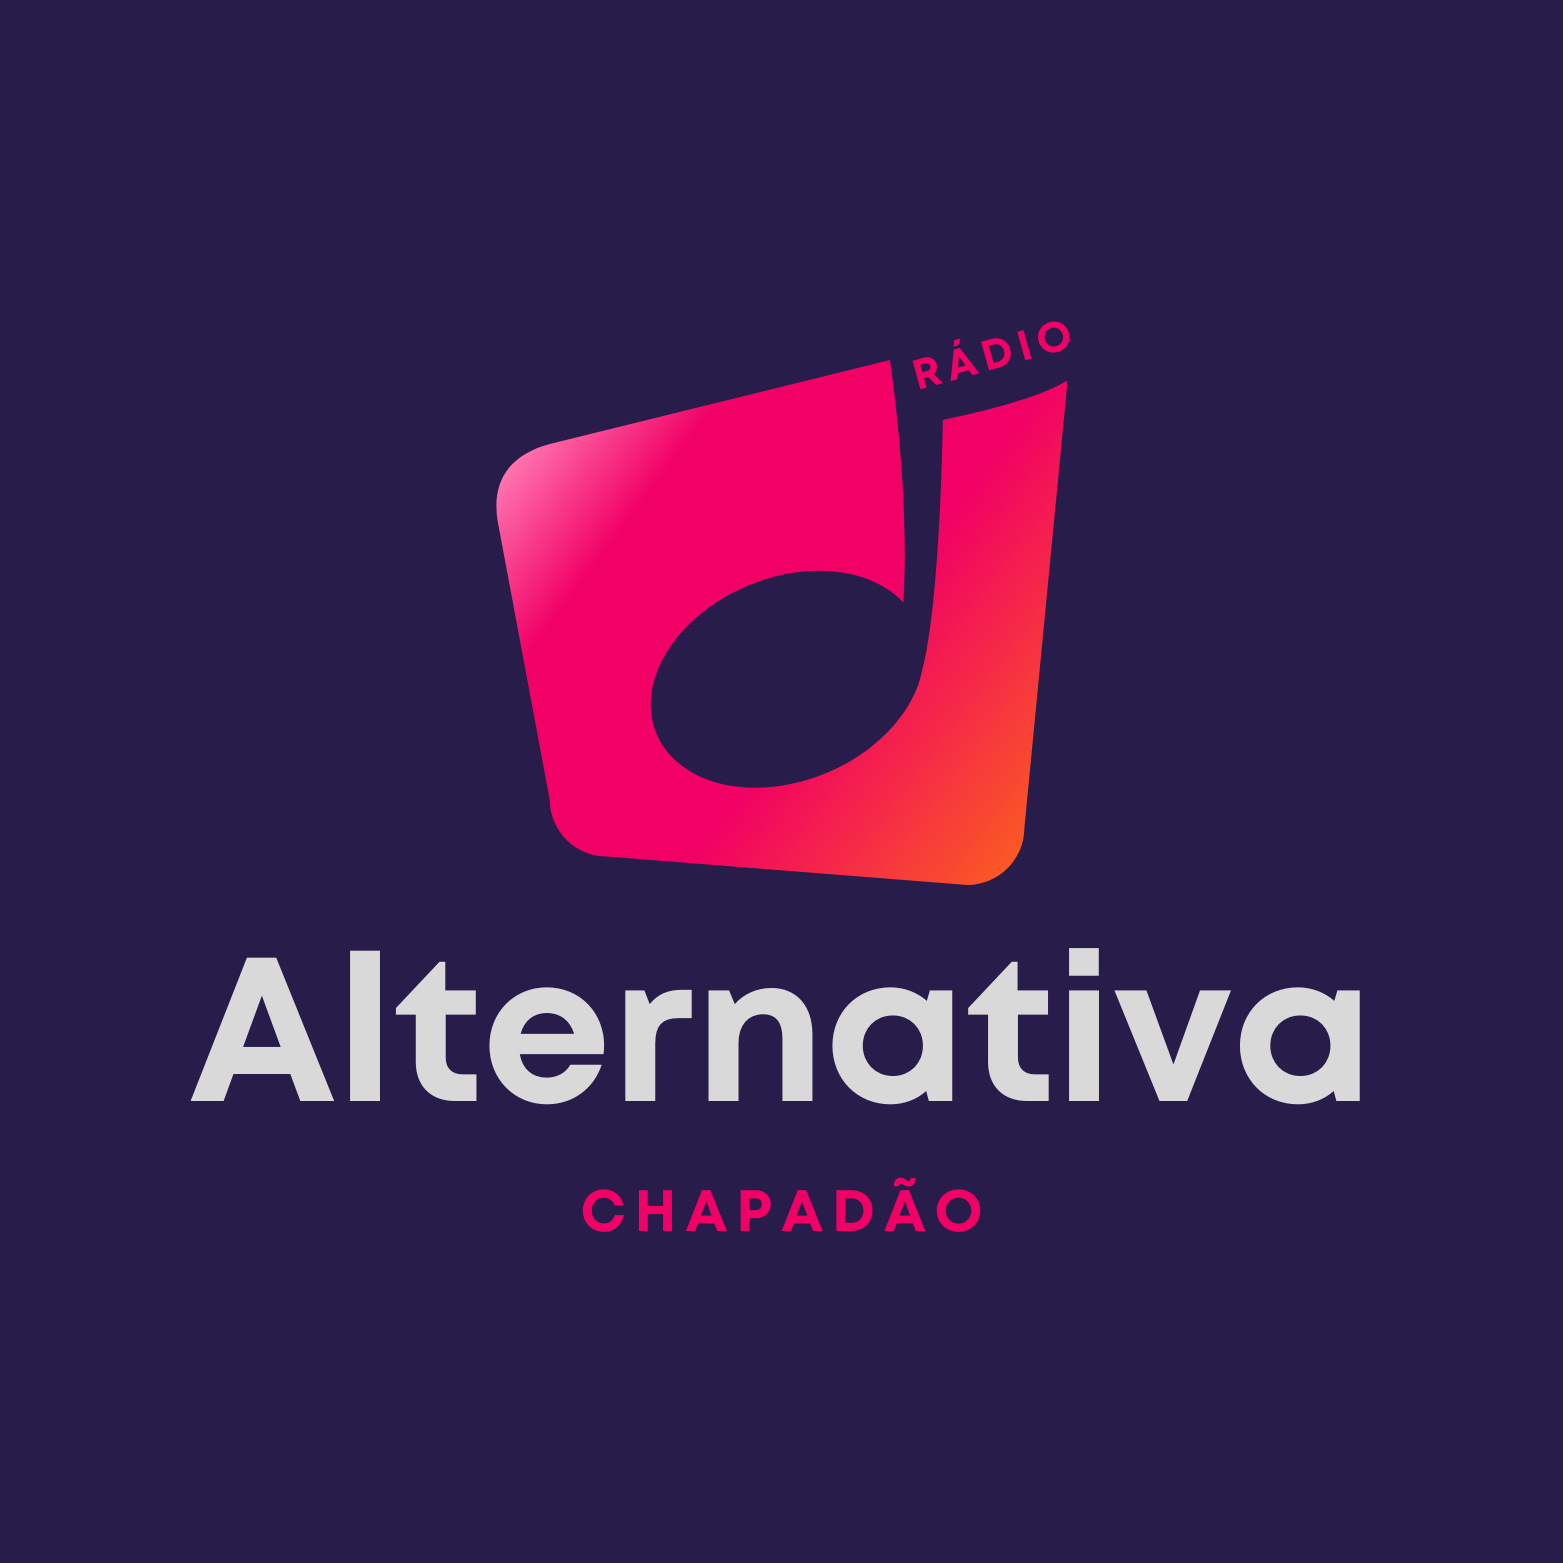 Rádio Alternativa Chapadão